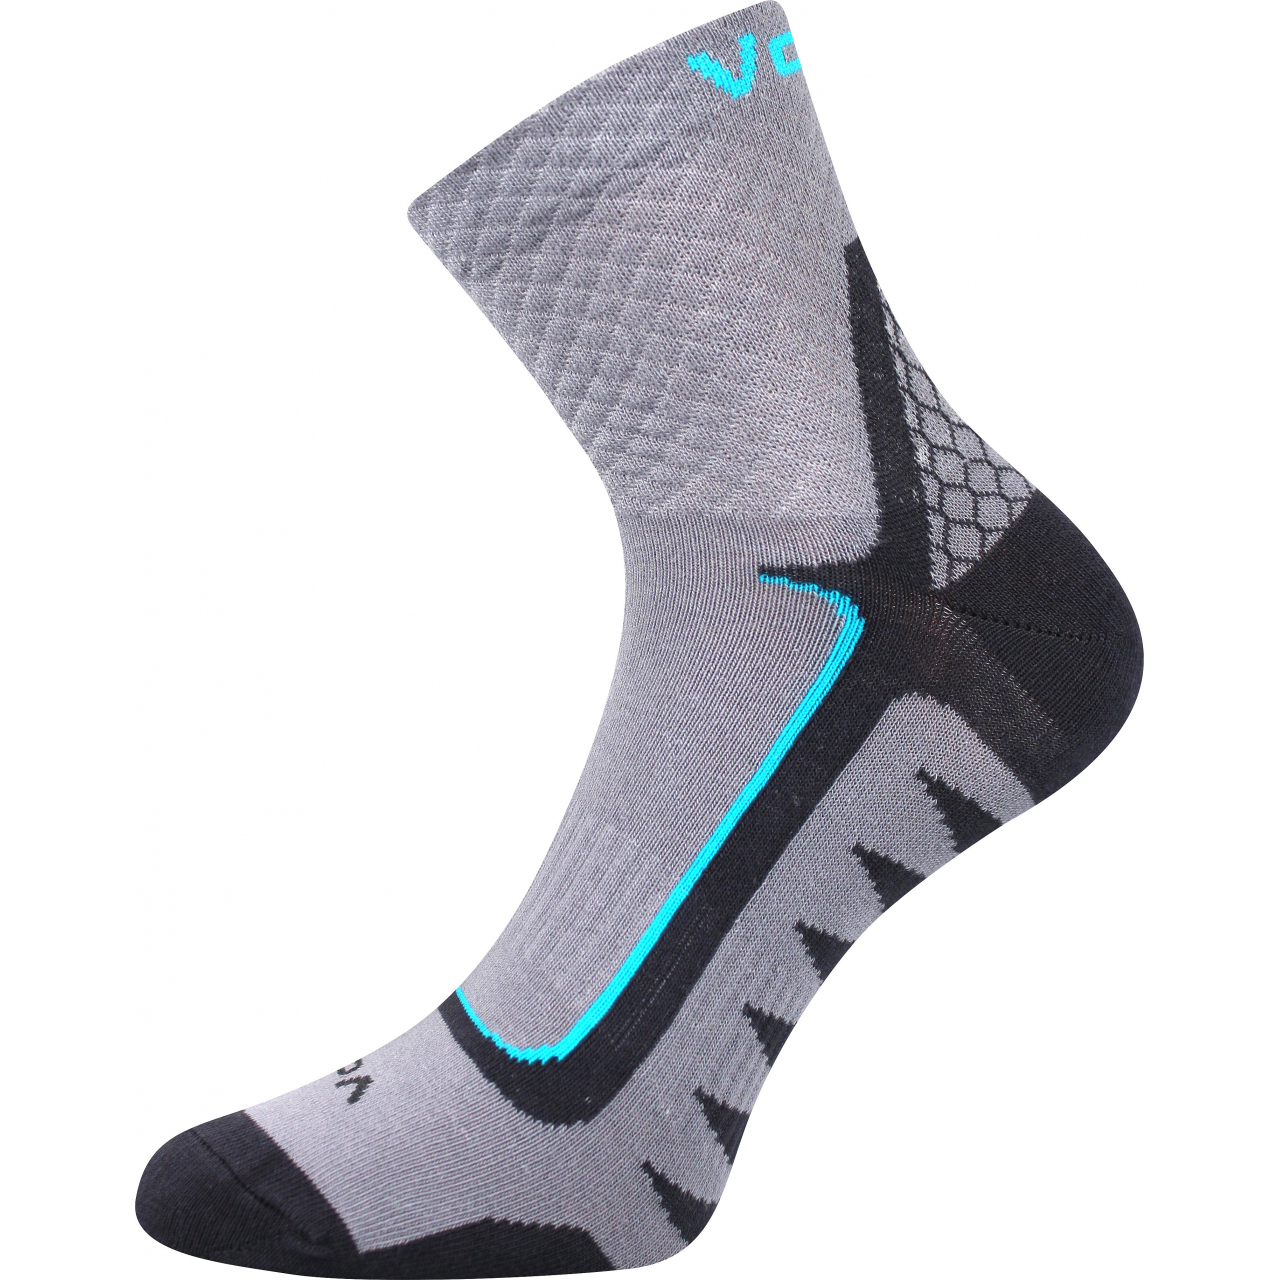 Ponožky sportovní unisex Voxx Kryptox - šedé-modré, 39-42